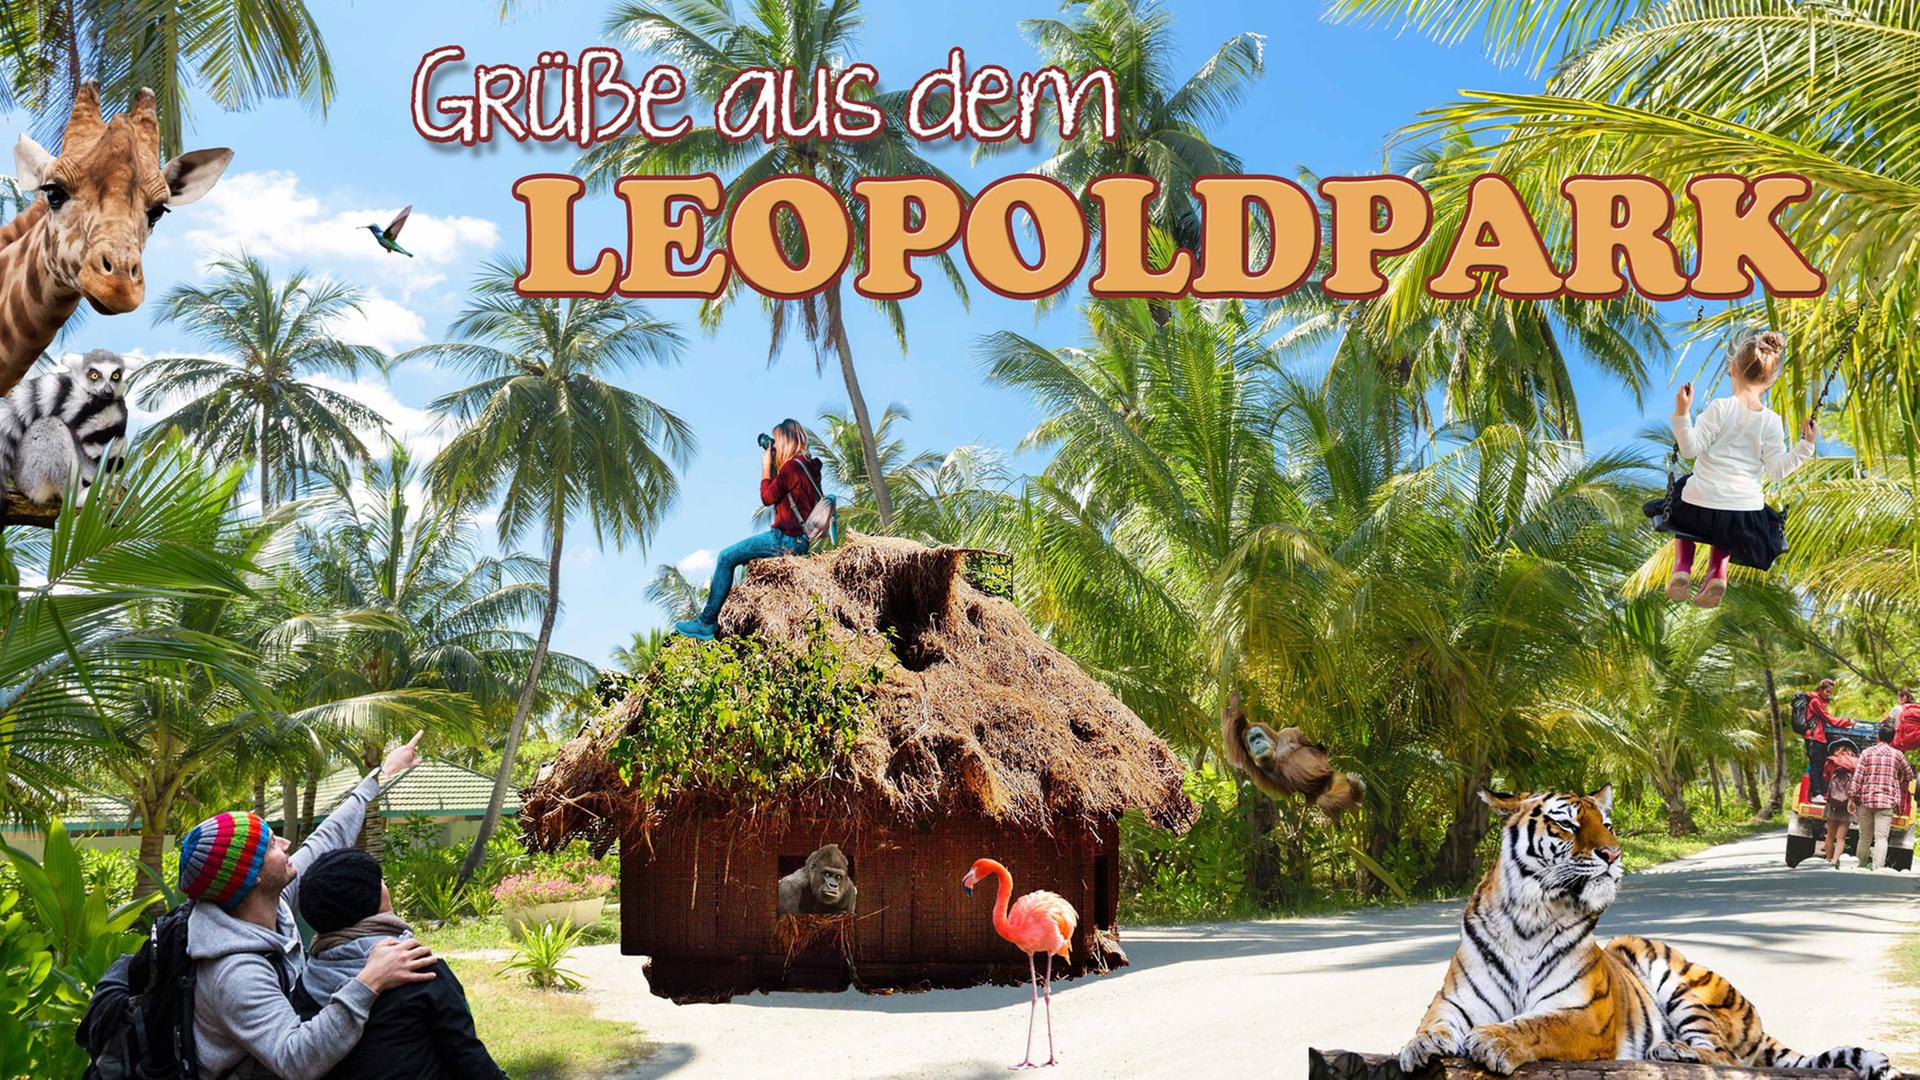 Ein Plakat mit der Aufschrift "Grüße aus dem Leopoldpark" zeigt Tiere aus Afrika mit Menschen, die durch den Park schlendern